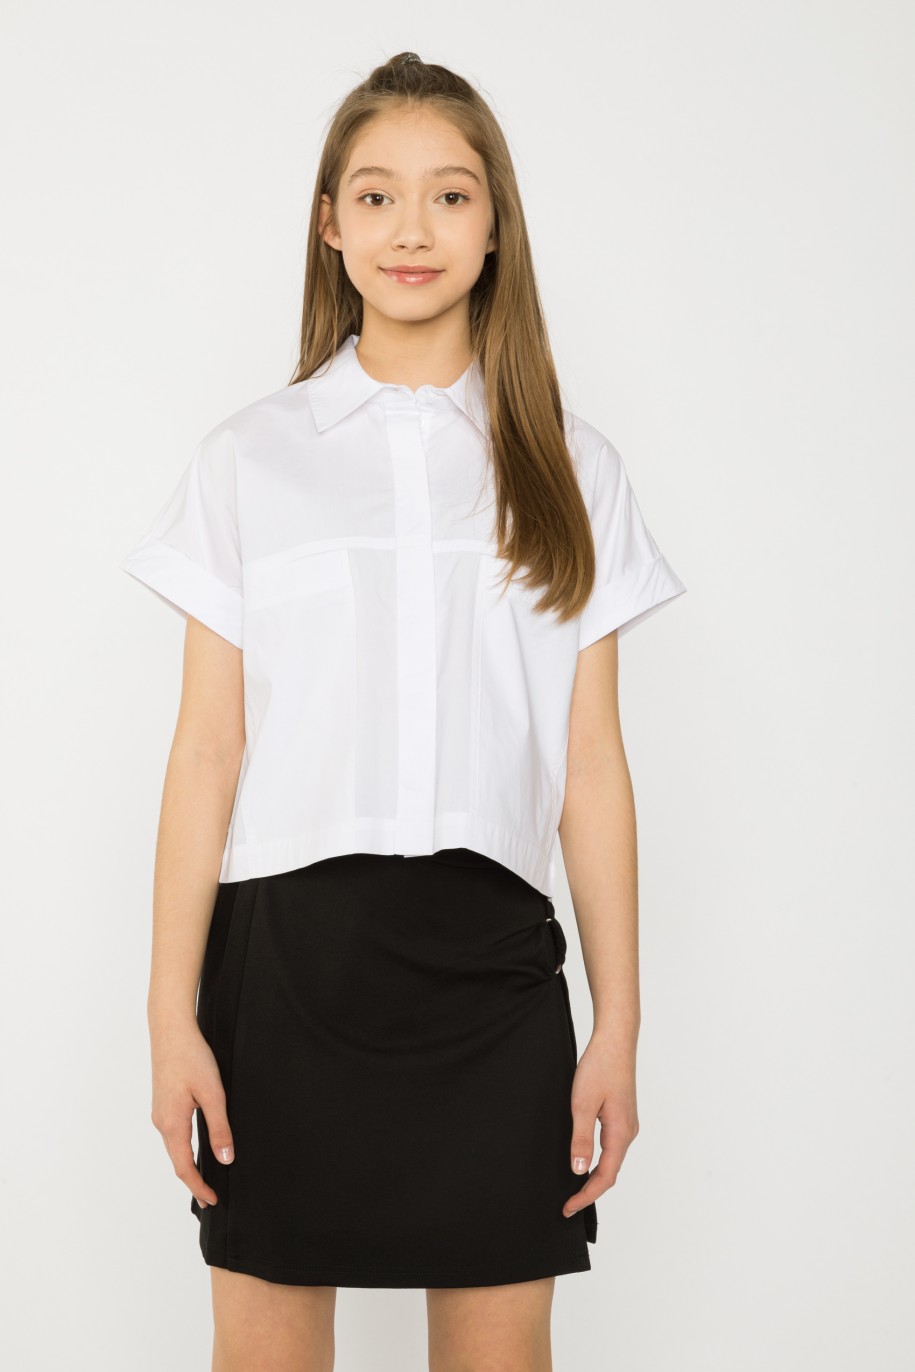 Biała krótka koszula dla dziewczyny - 34085